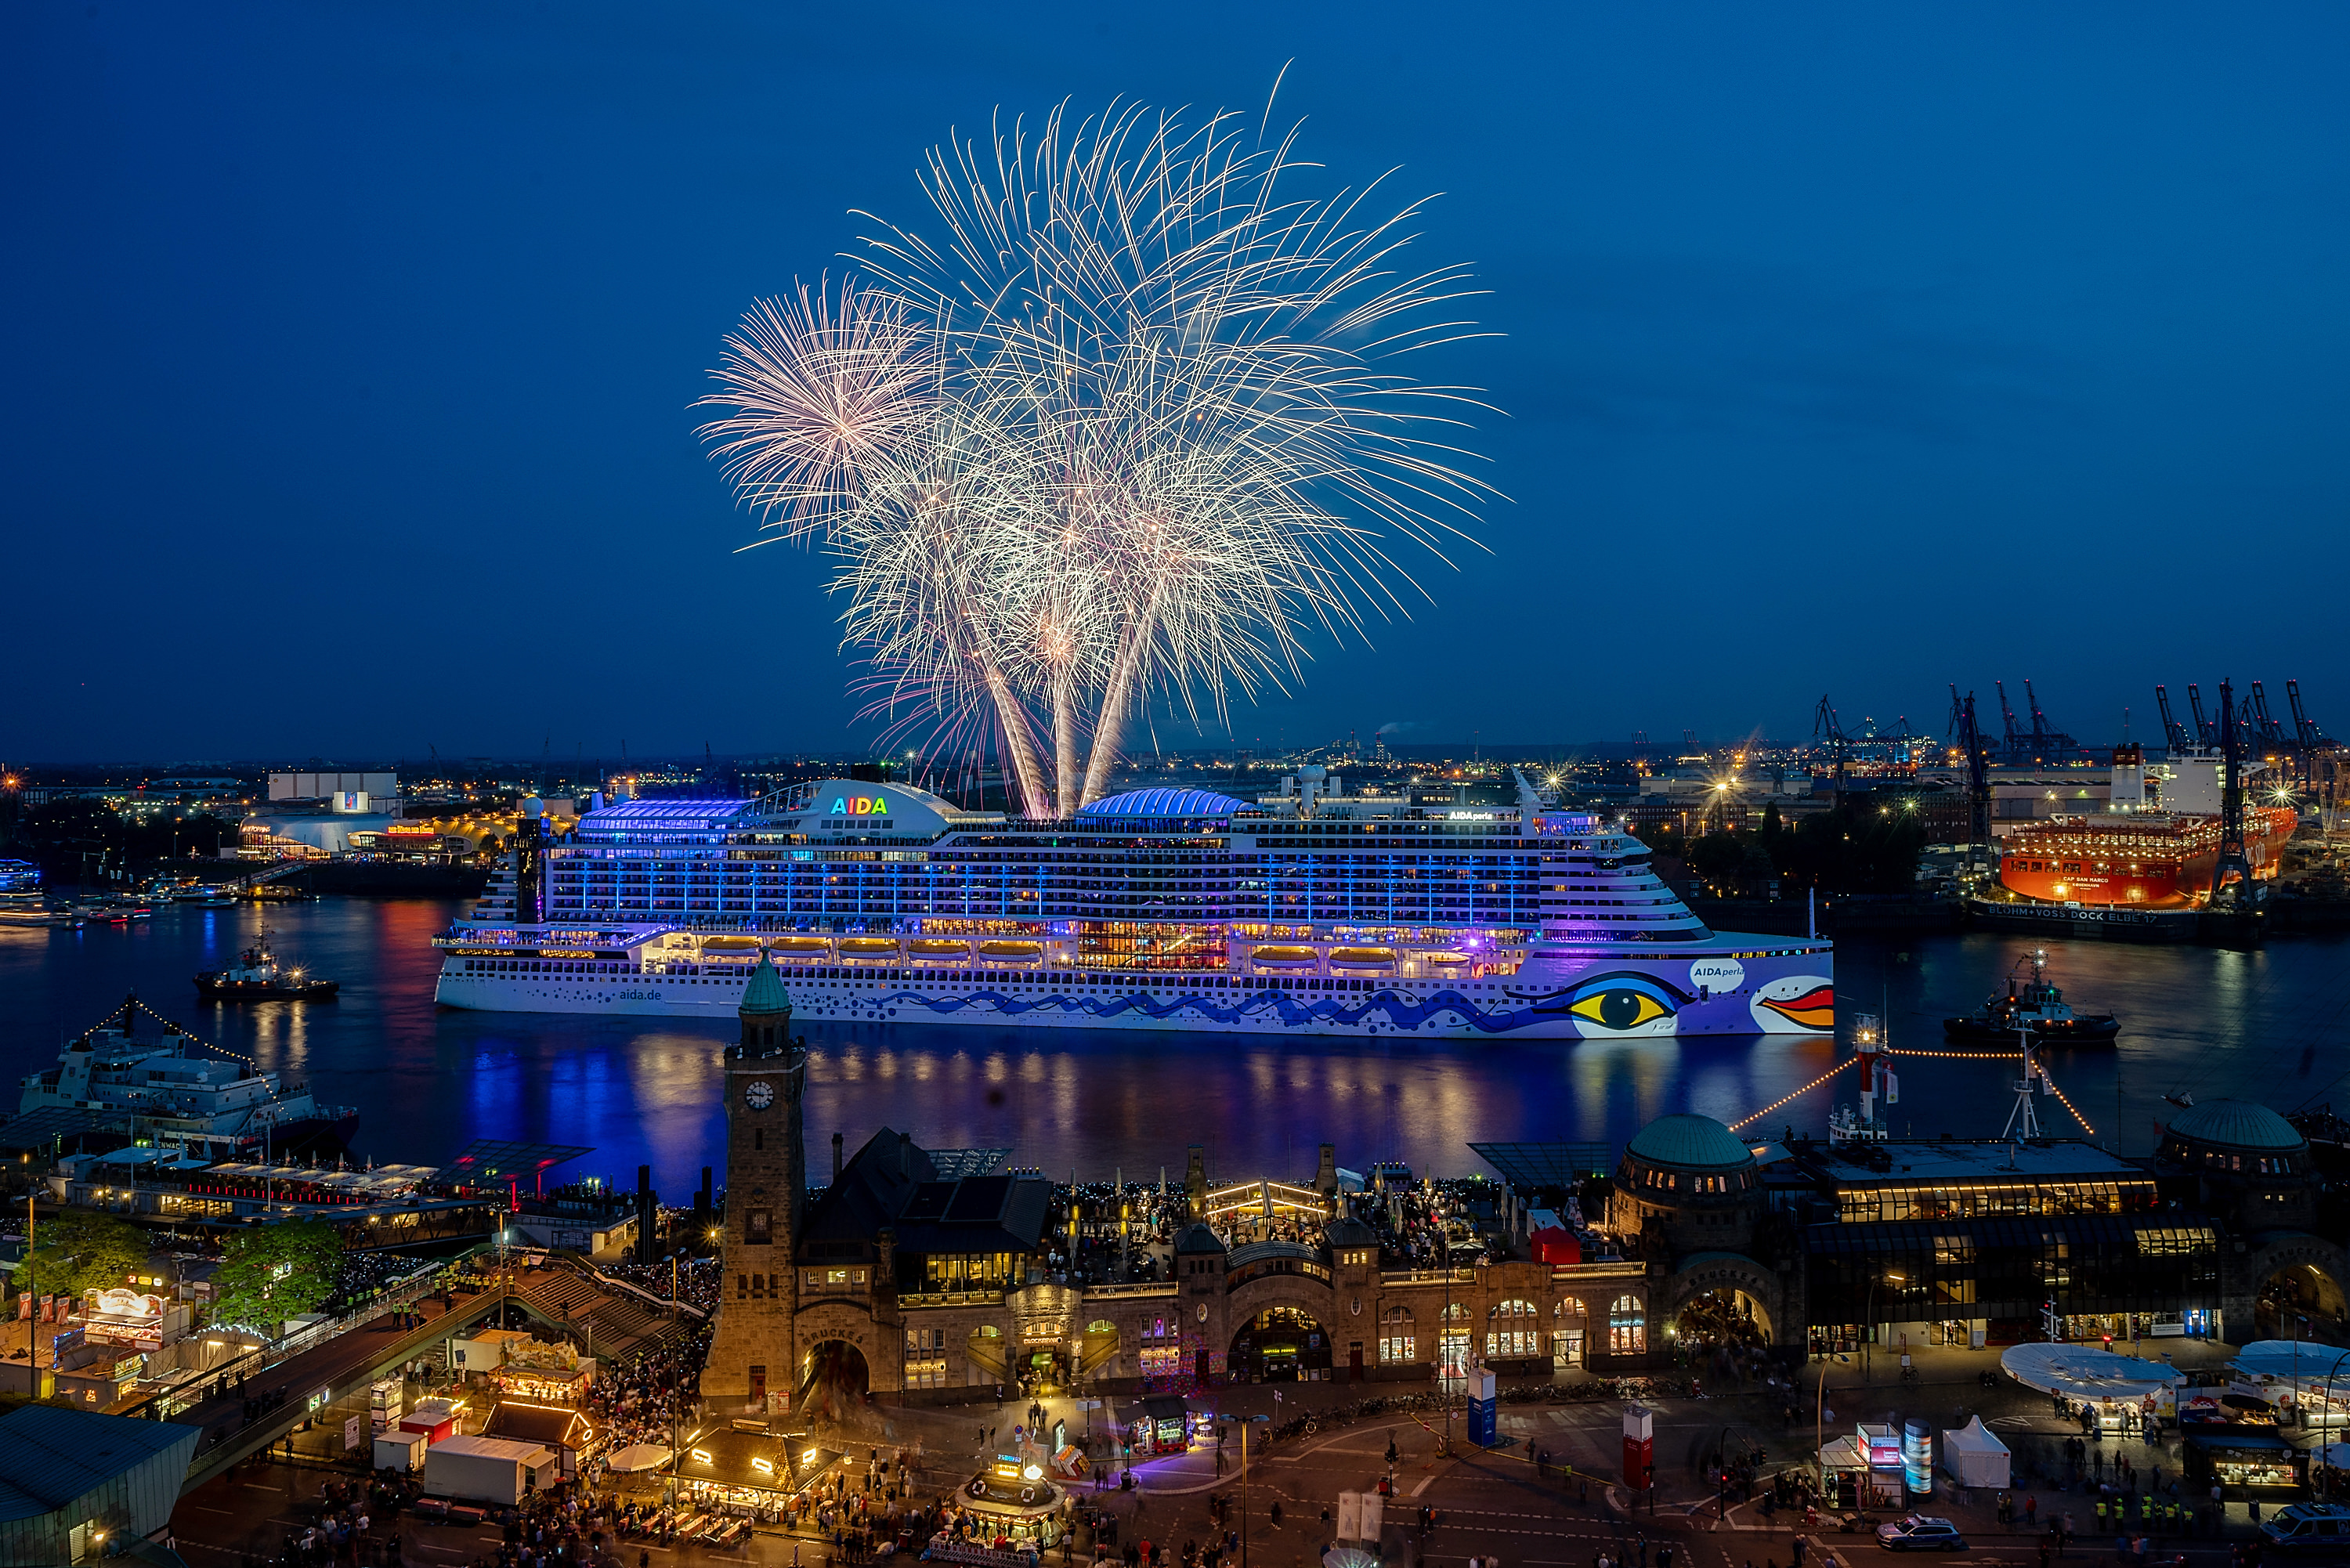 Das Kreuzfahrtunternehmen AIDA Cruises ist bereits zum achten Mal Hauptsponsor des HAFENGEBURTSTAG HAMBURG und bezeugt dadurch das kontinuierliche Engagement für die Hansestadt. Besucher können sich vom 10. bis 12. Mai 2019